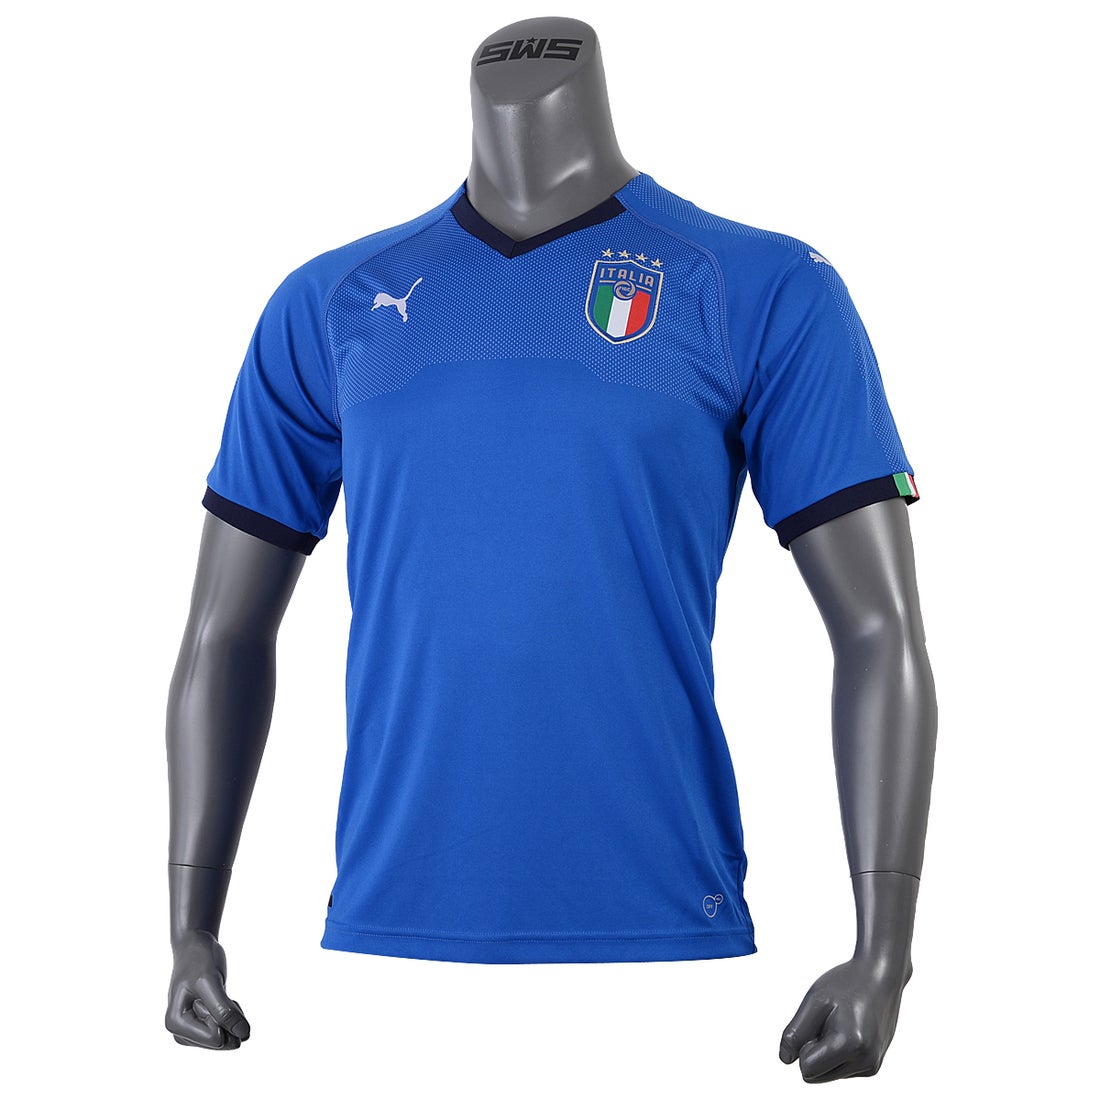 Puma イタリア代表 18 ユニフォーム ホーム 半袖 レプリカ サッカーショップ Sws サッカーユニフォーム サッカー用品通販 フットボールパーク